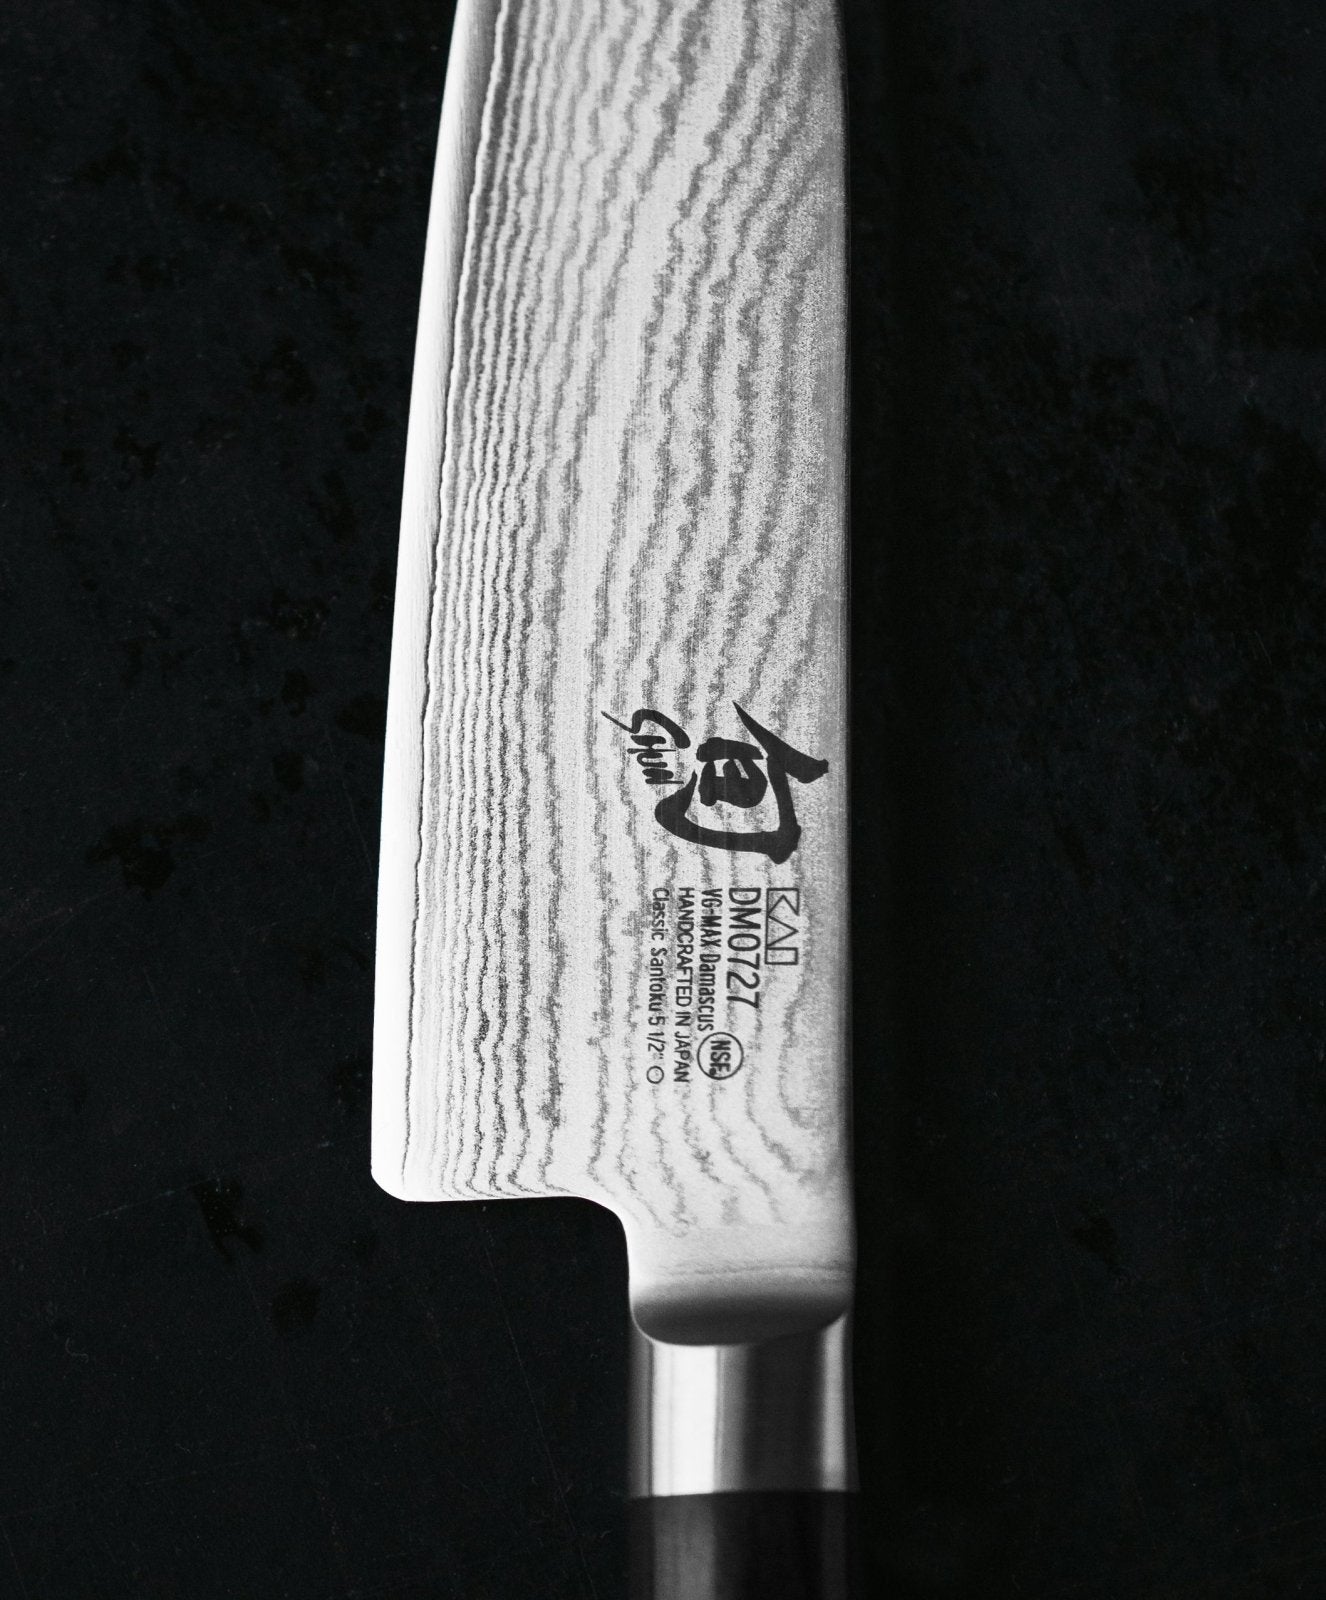 KAI Shun 9cm Paring Knife - KAI-DM-0700 - The Cotswold Knife Company